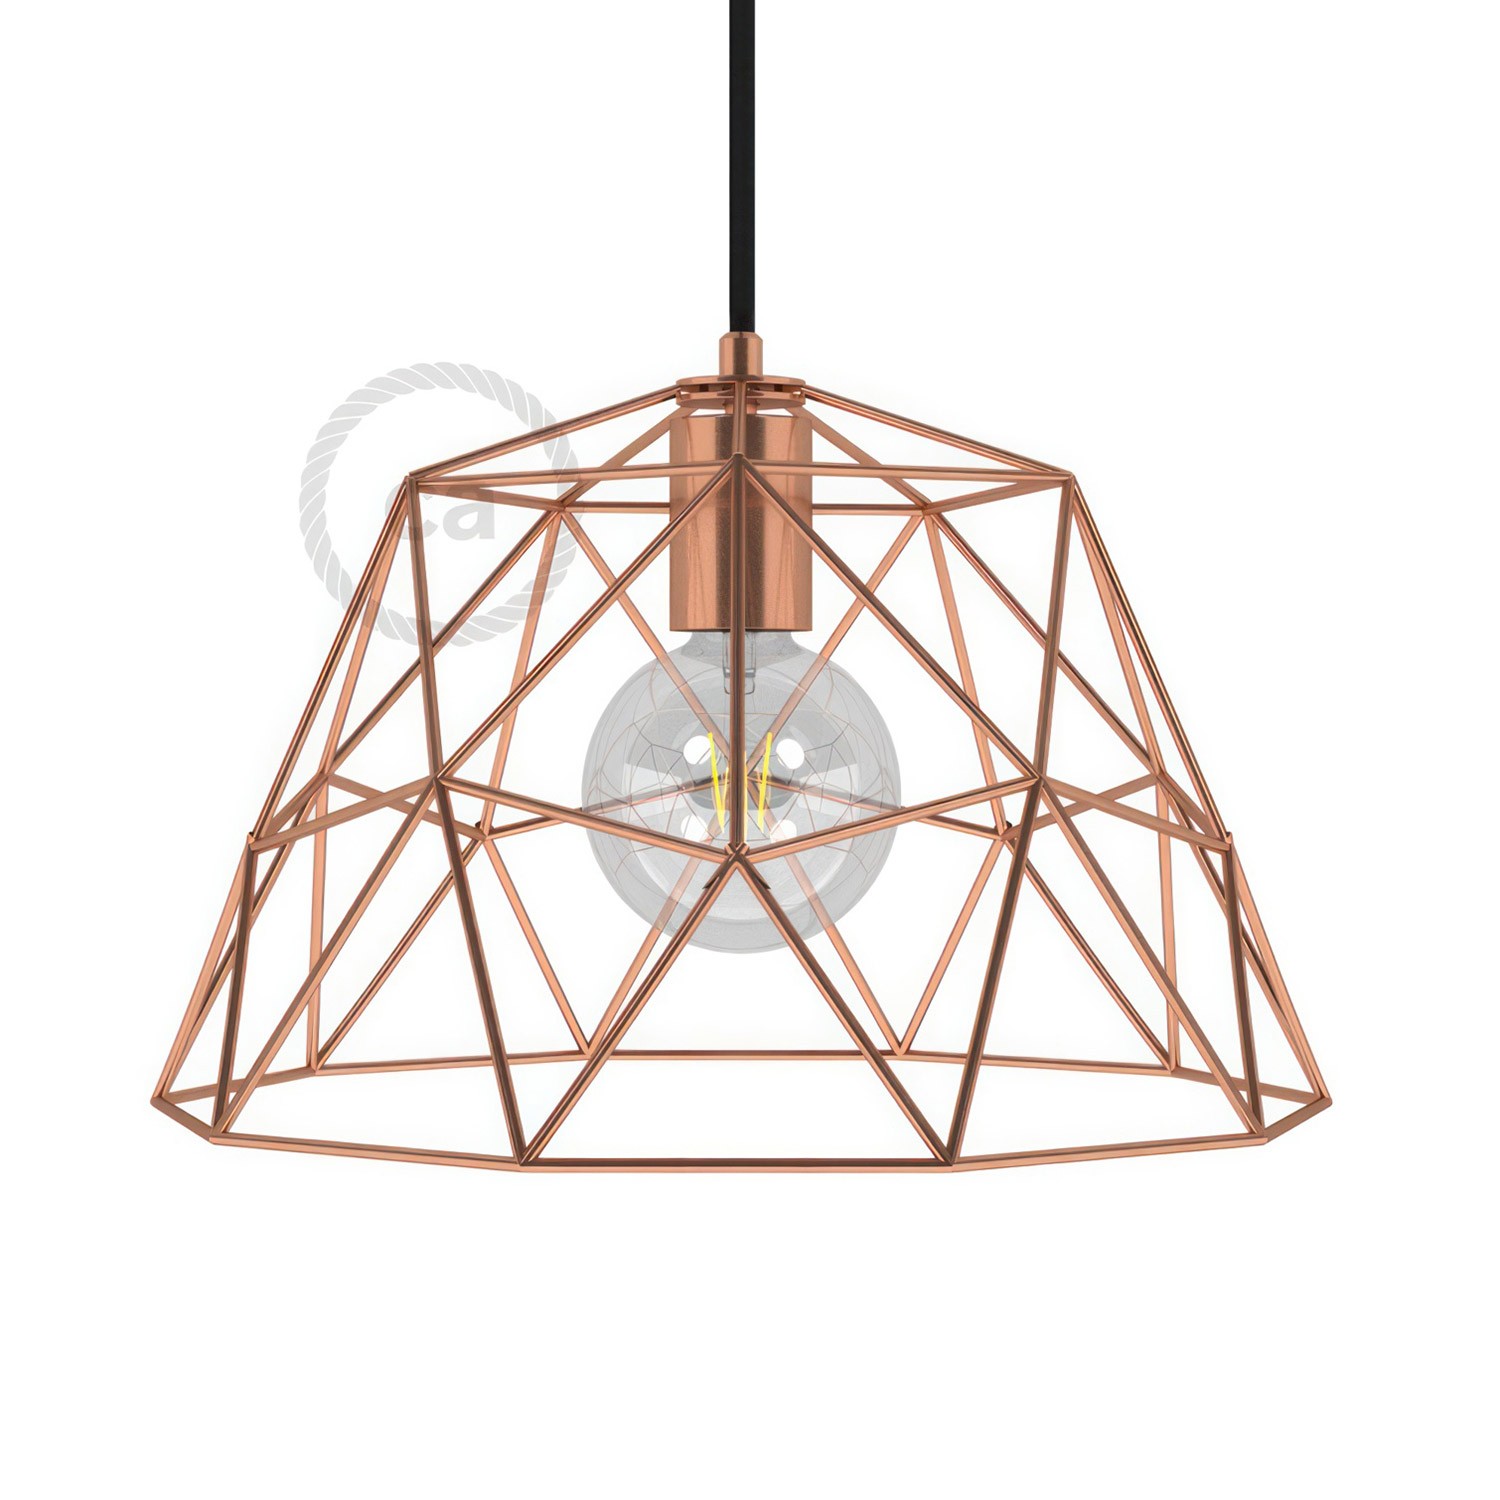 Lampenschirmkäfig Dome XL aus Metall mit E27-Fassung